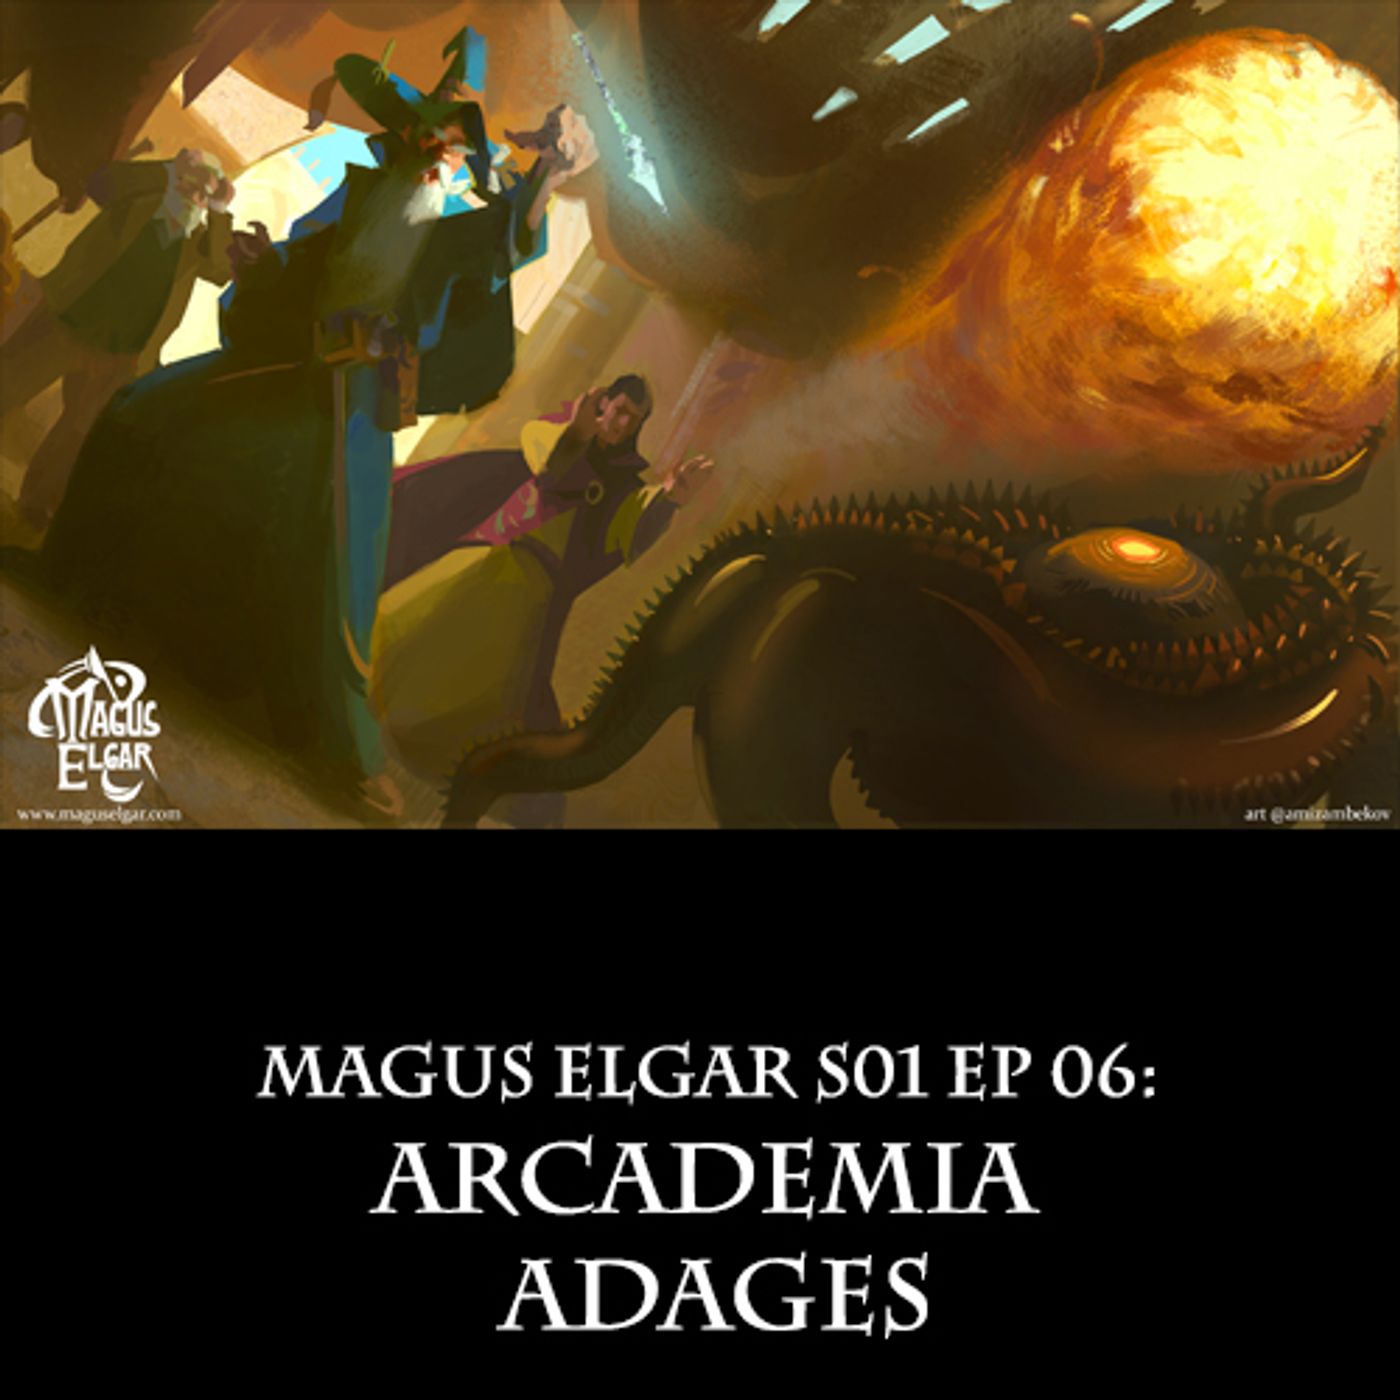 Magus Elgar S01 Ep 06: Arcademia Adages